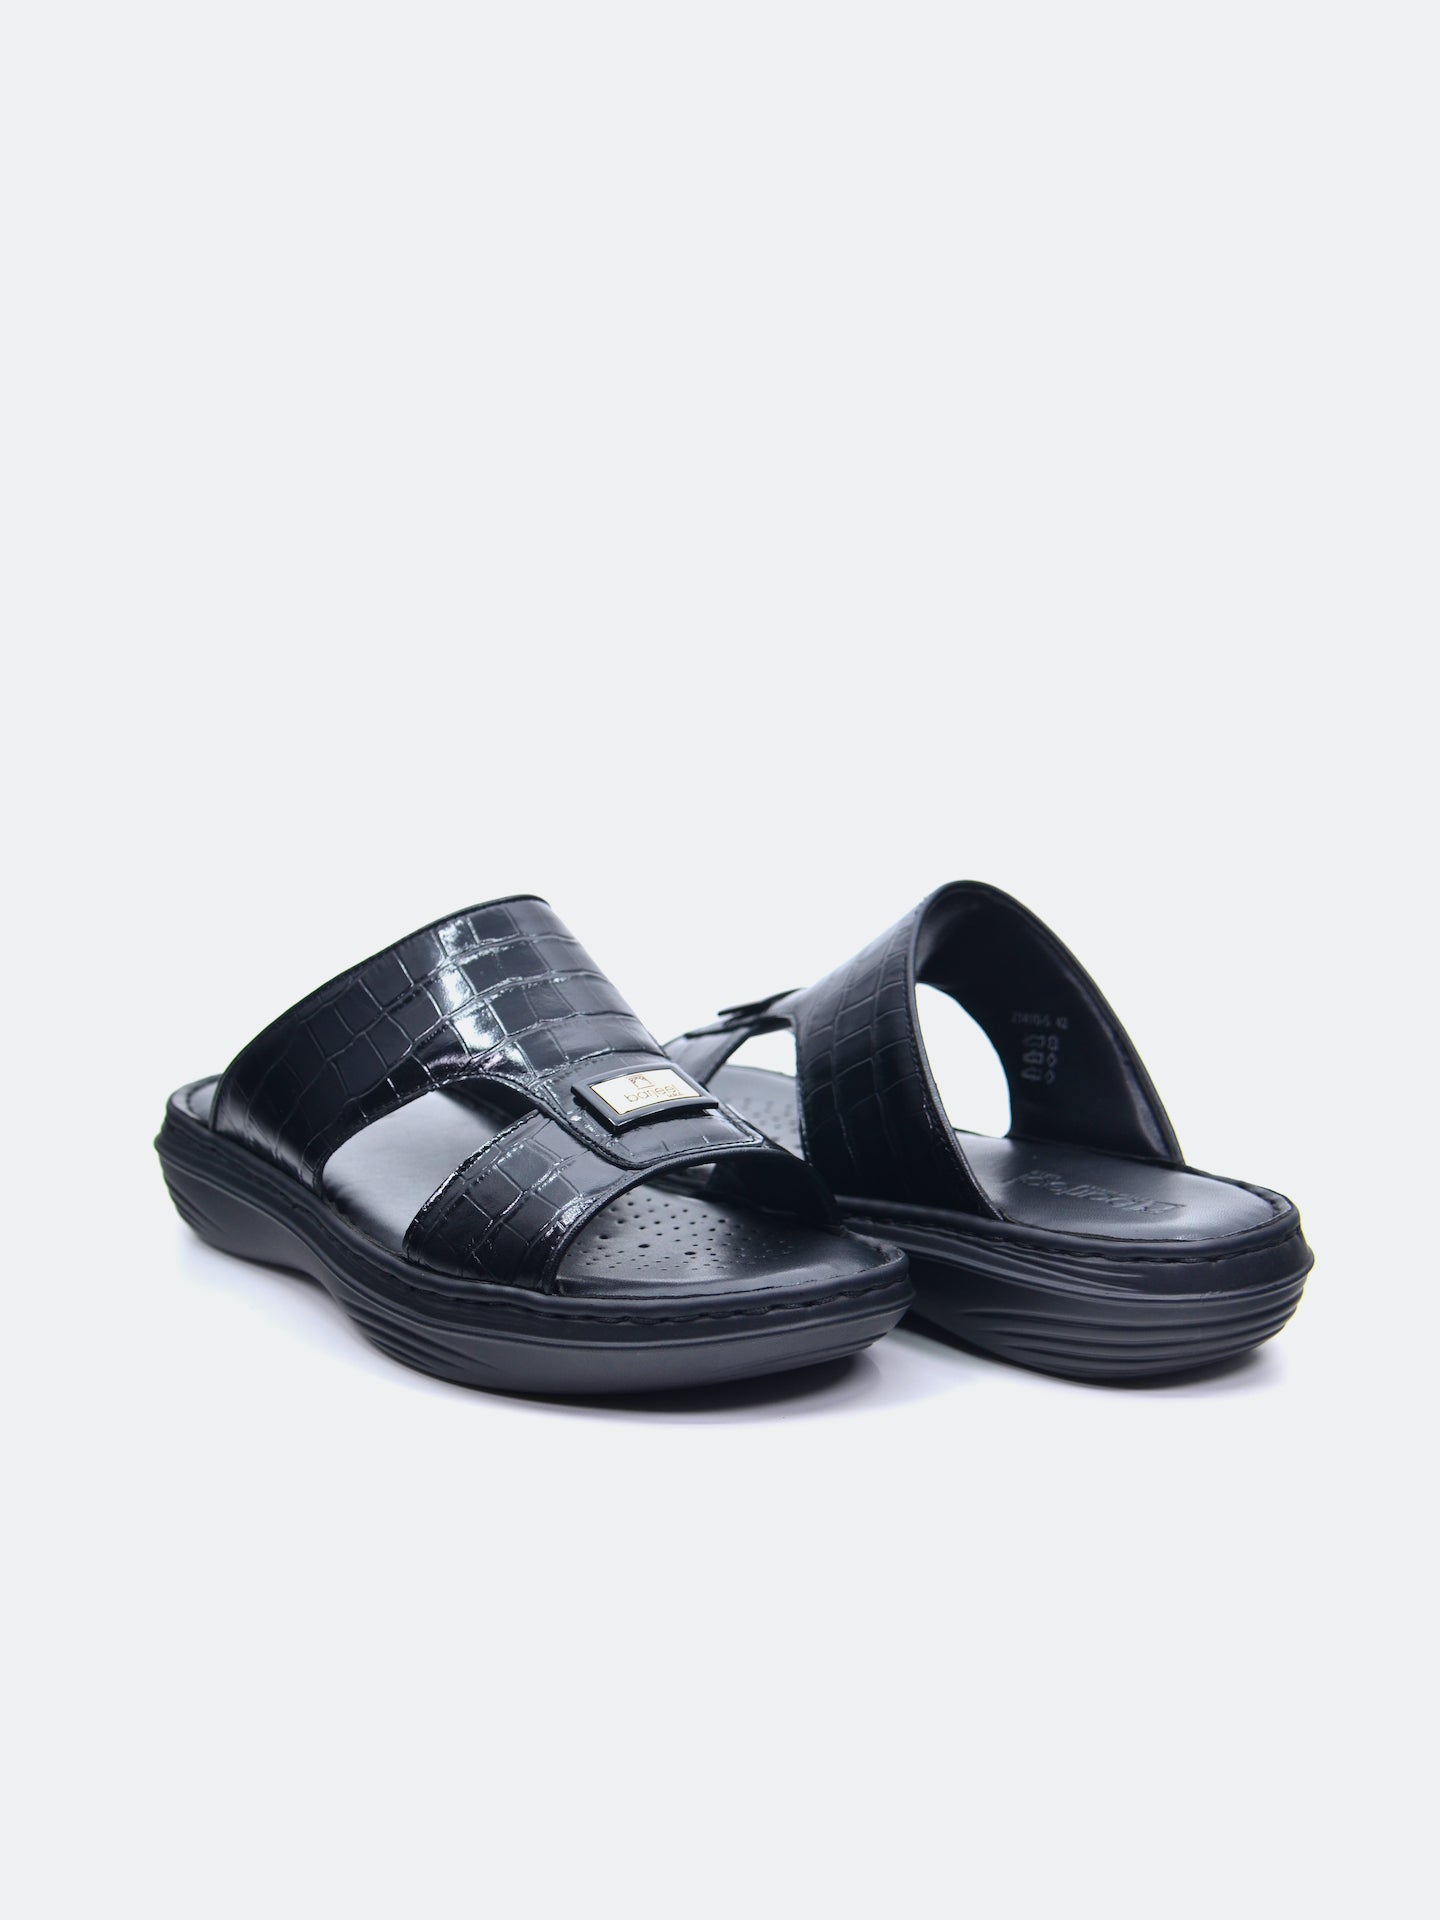 Barjeel Uno 21410-5 Men's Arabic Sandals #color_Black